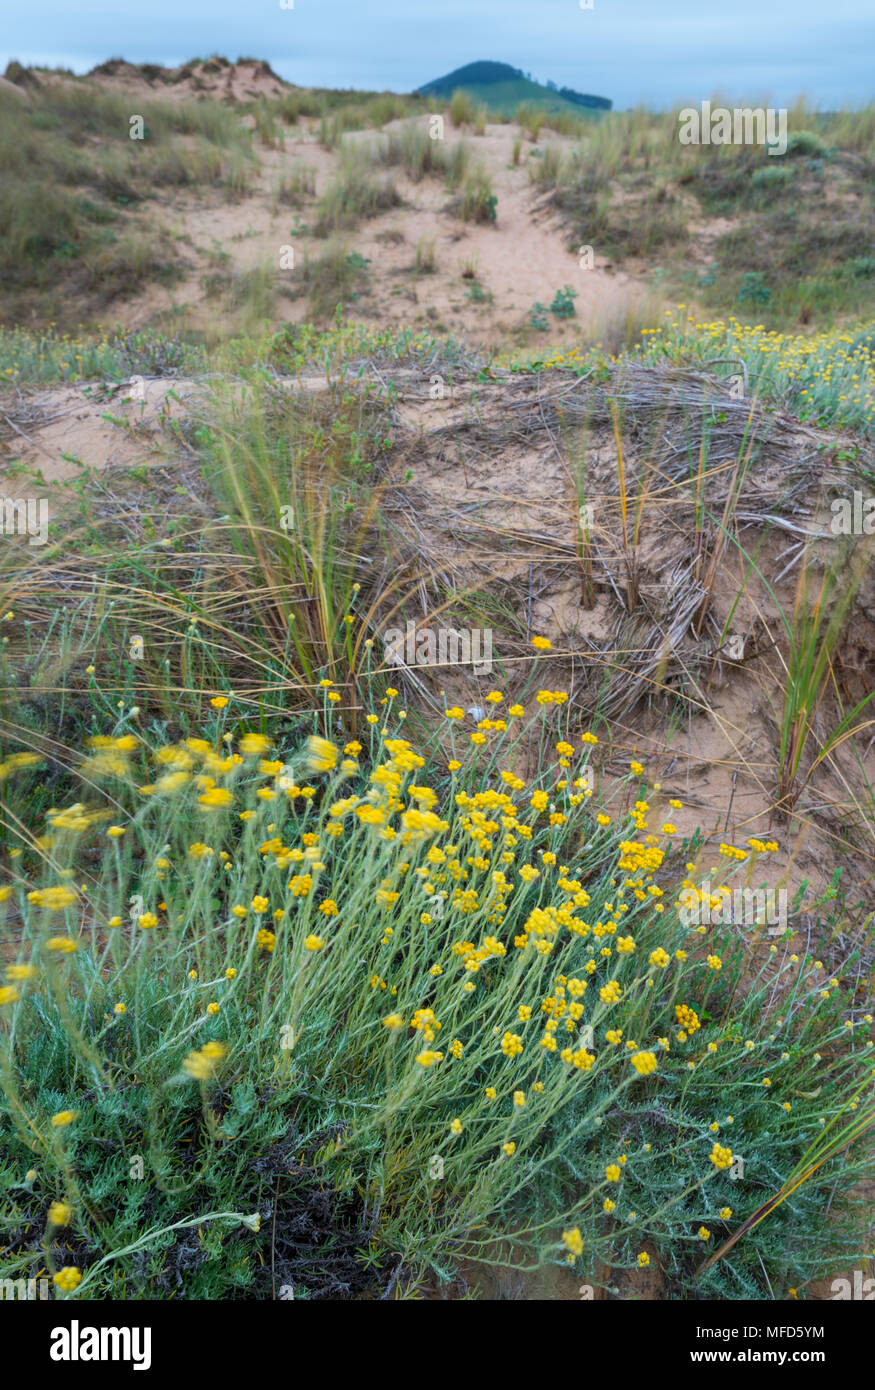 SIEMPREVIVA o PERPETUA SILVESTRE (Helichrysum stoechas), la perpetua o siemprevivaValdearenas beach, Dunas de Liencres Natural Park, Cantabrian Sea, P Stock Photo